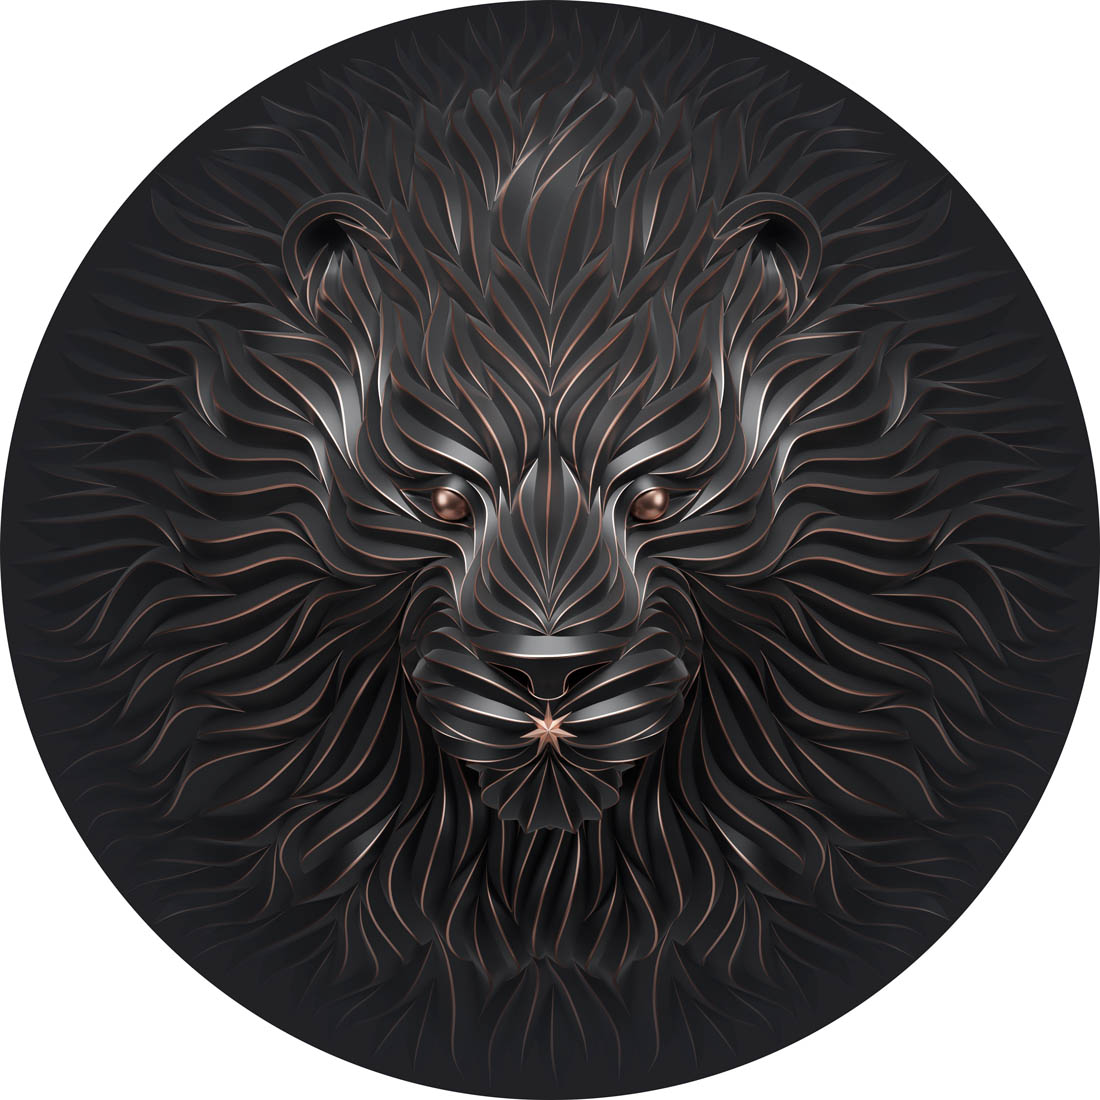 sculpture lion by maxim shkret